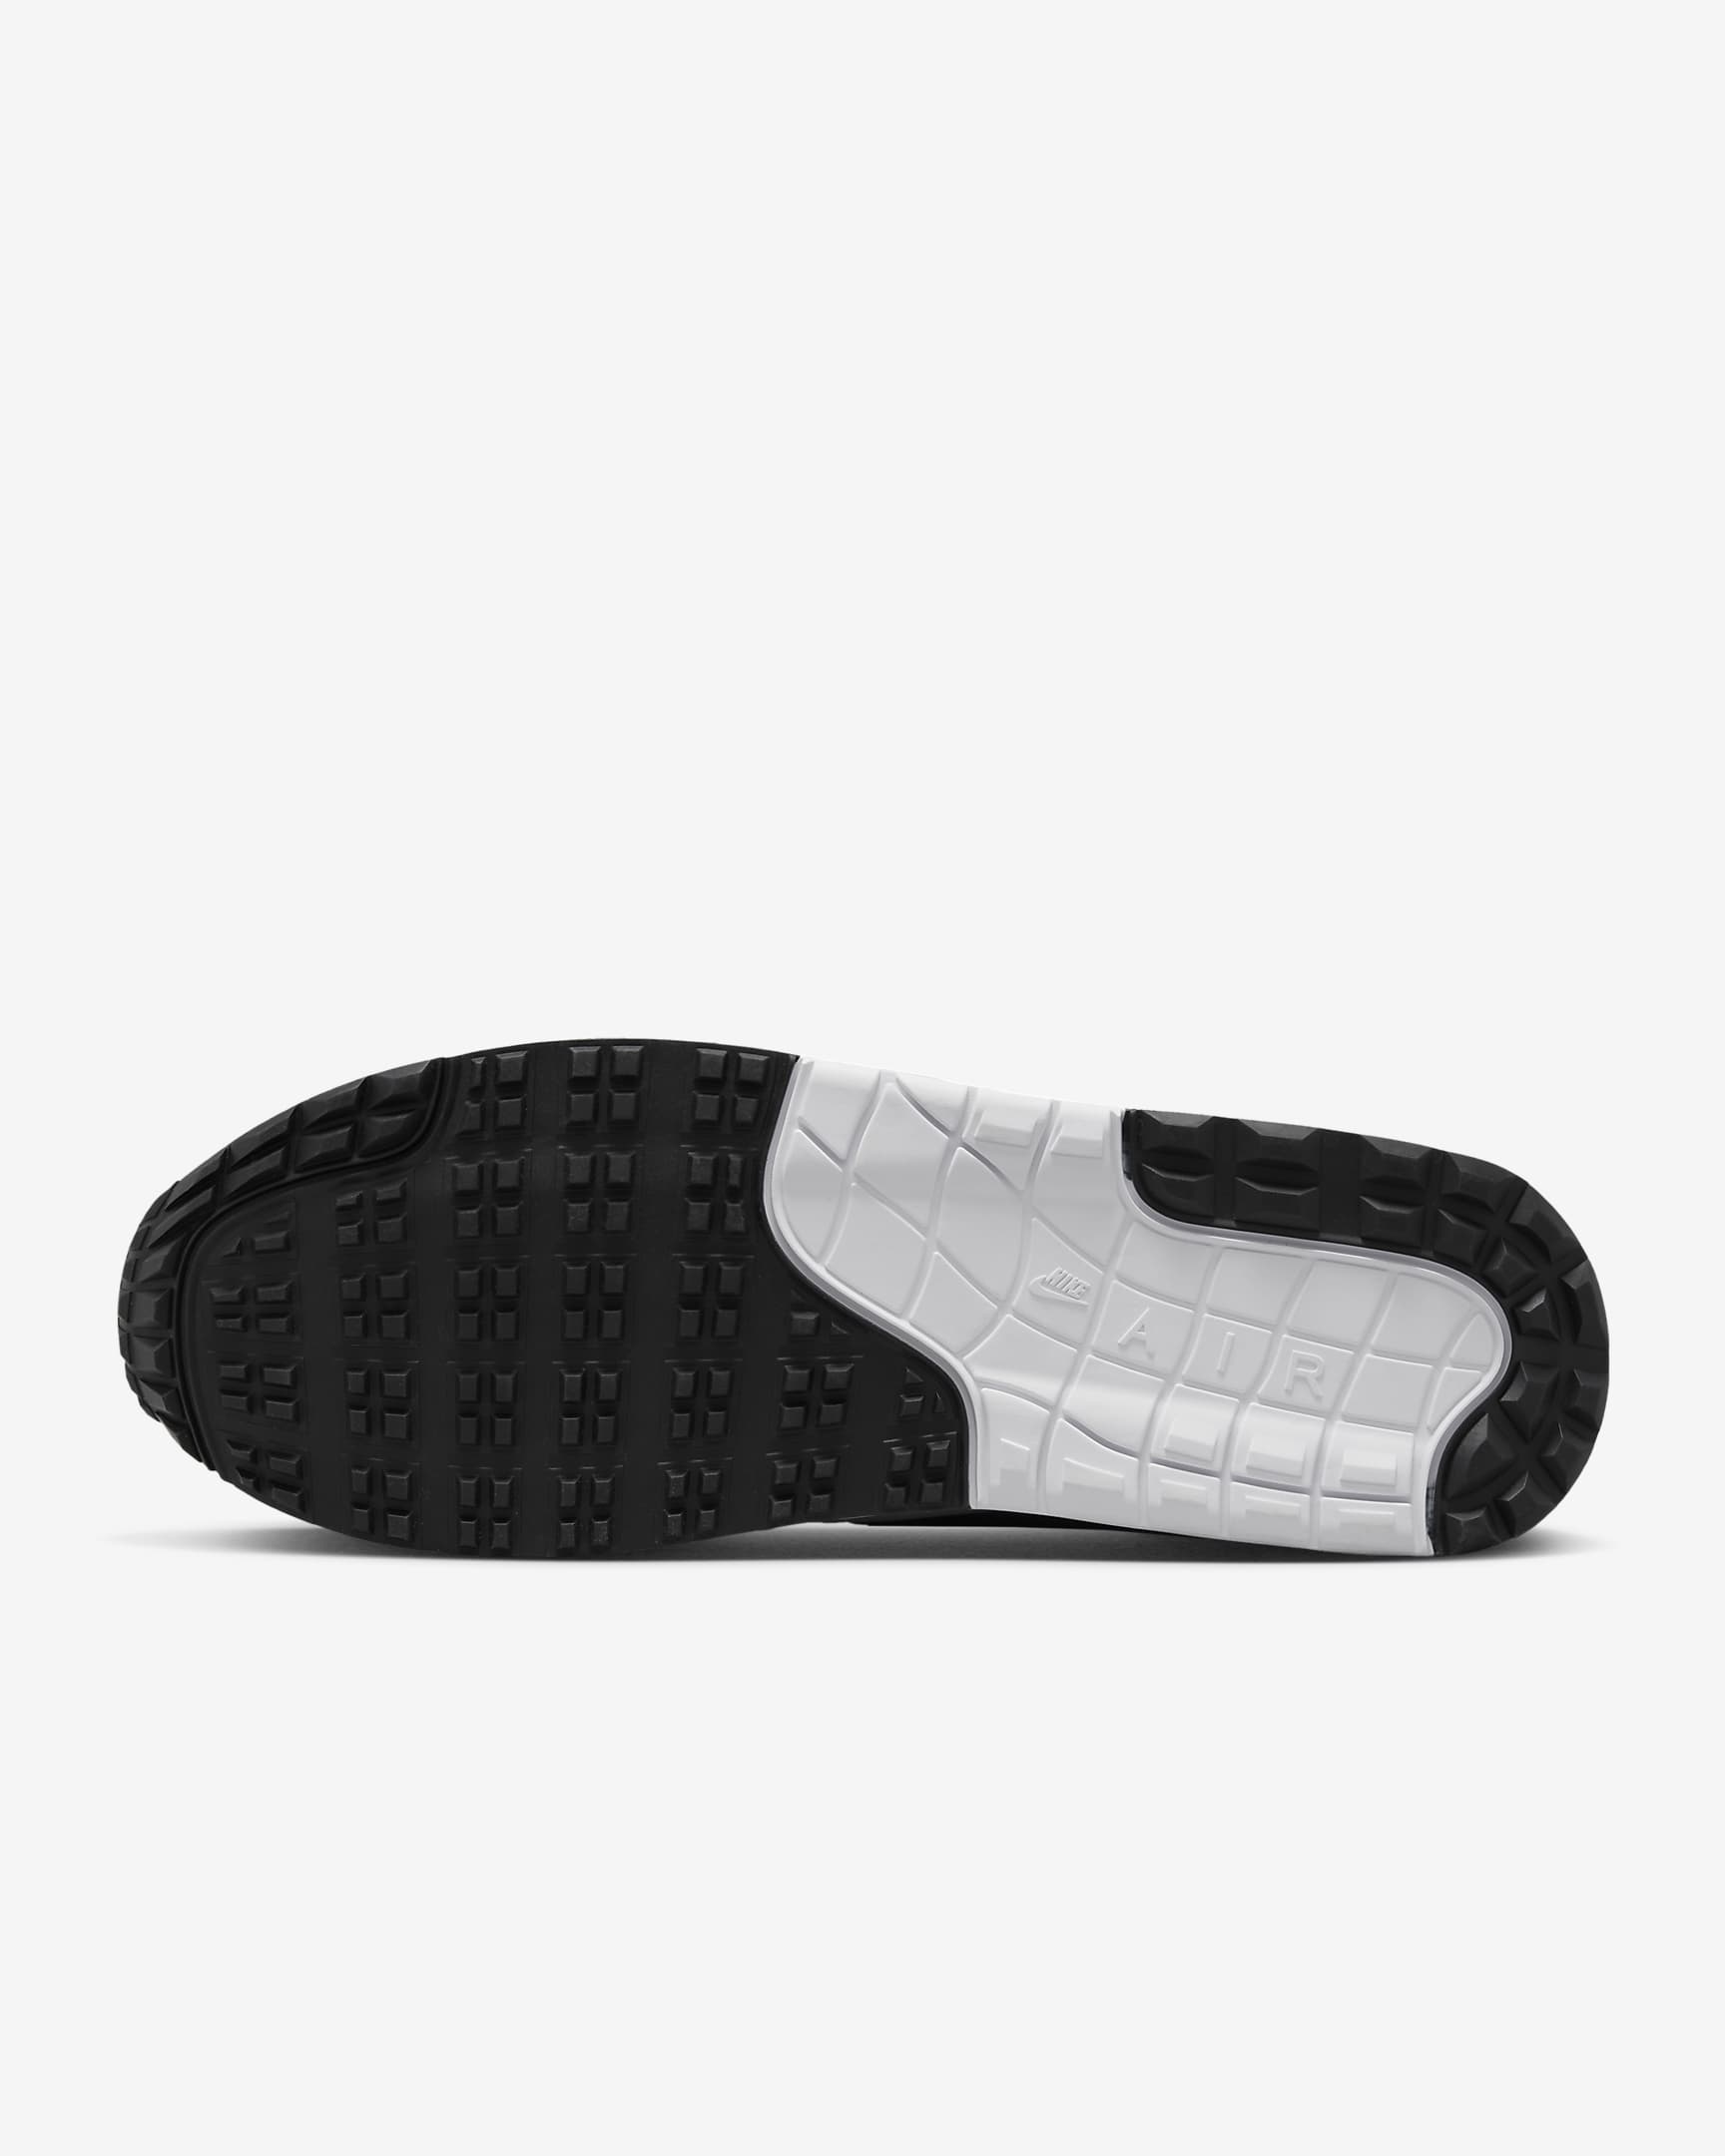 Nike Air Max 1 '86 OG G Men's Golf Shoes - White/Black